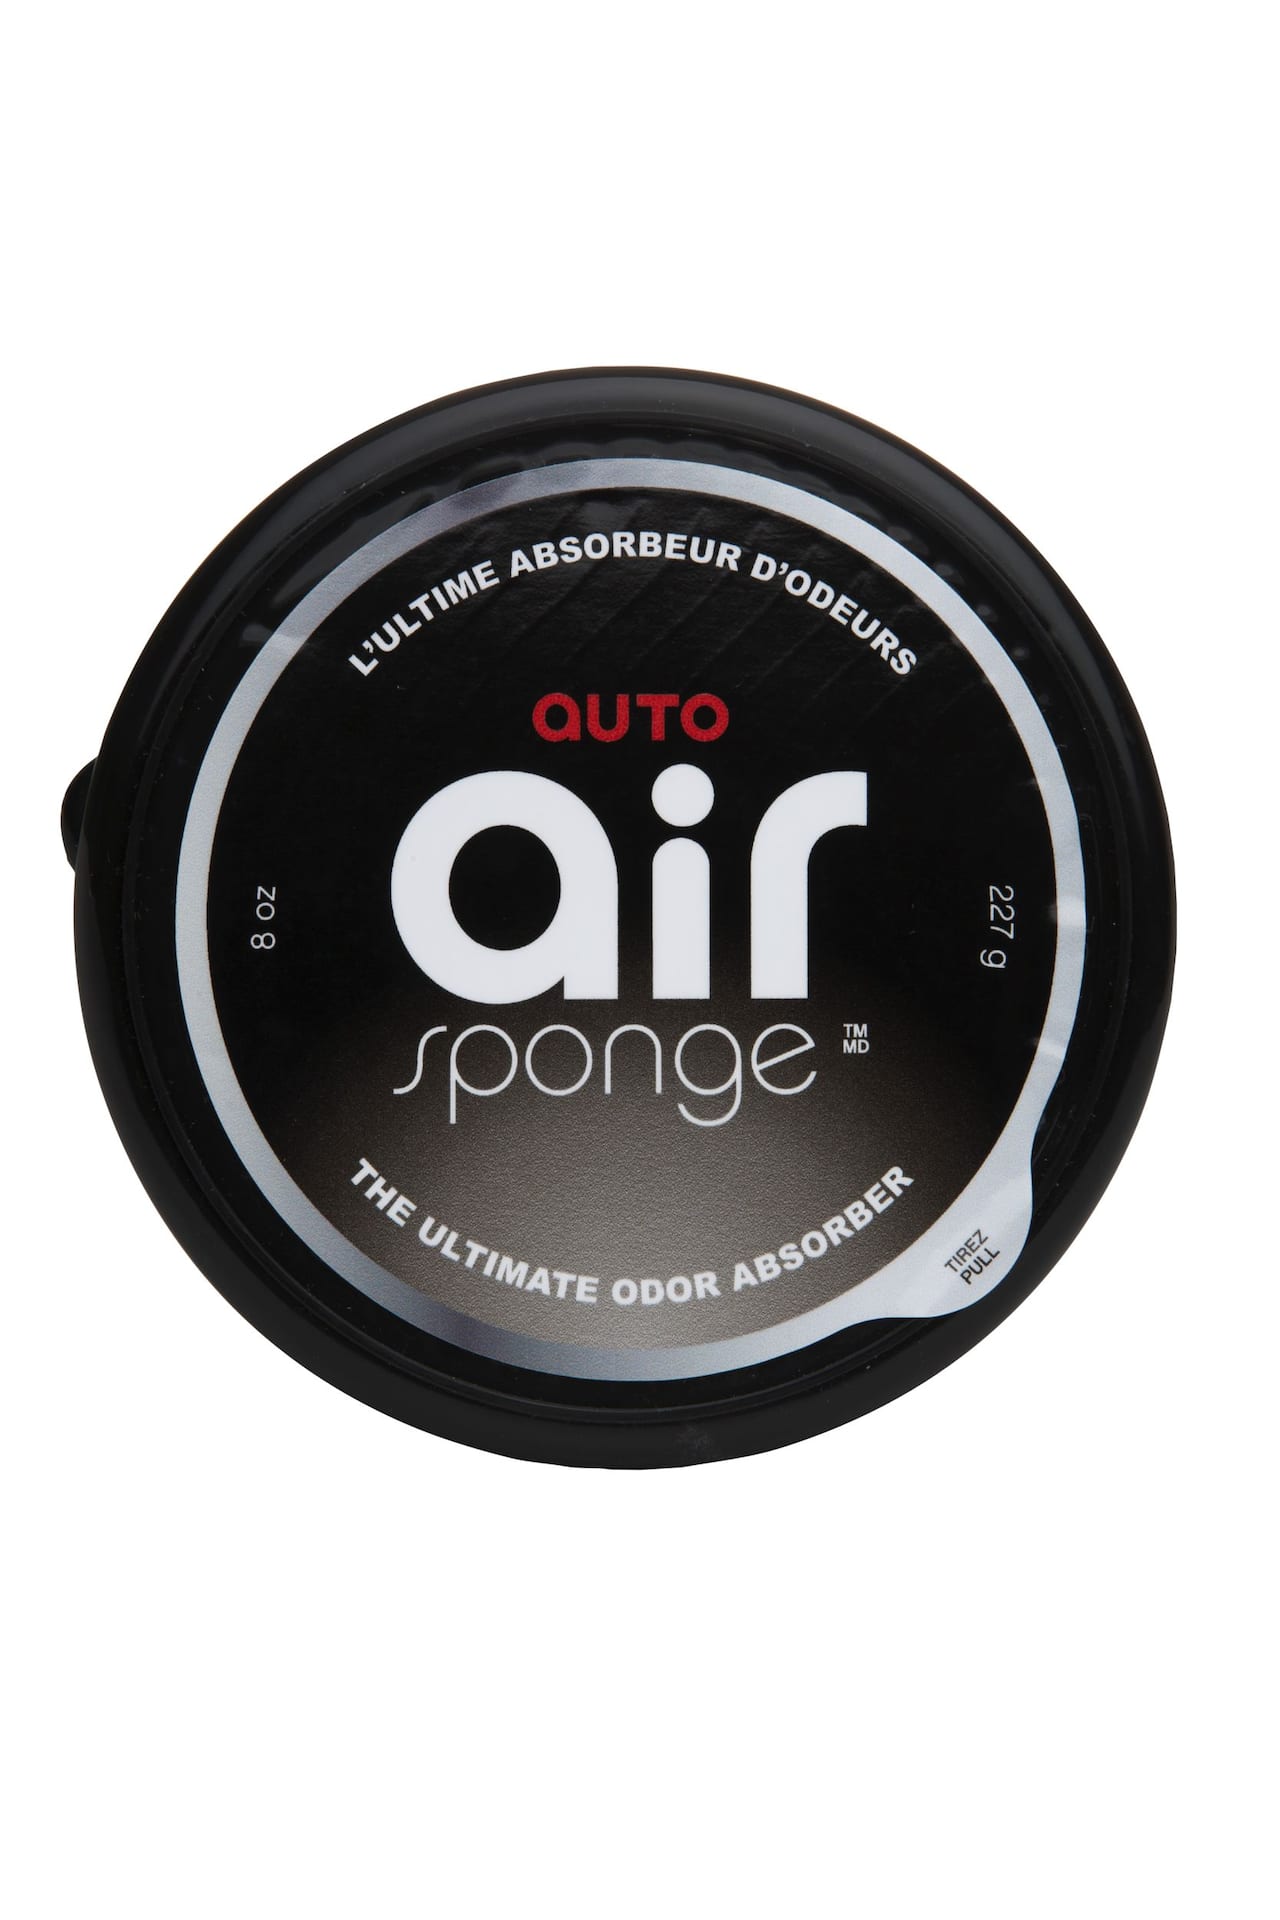 Absorbeur d'odeurs Air Sponge pour l'auto